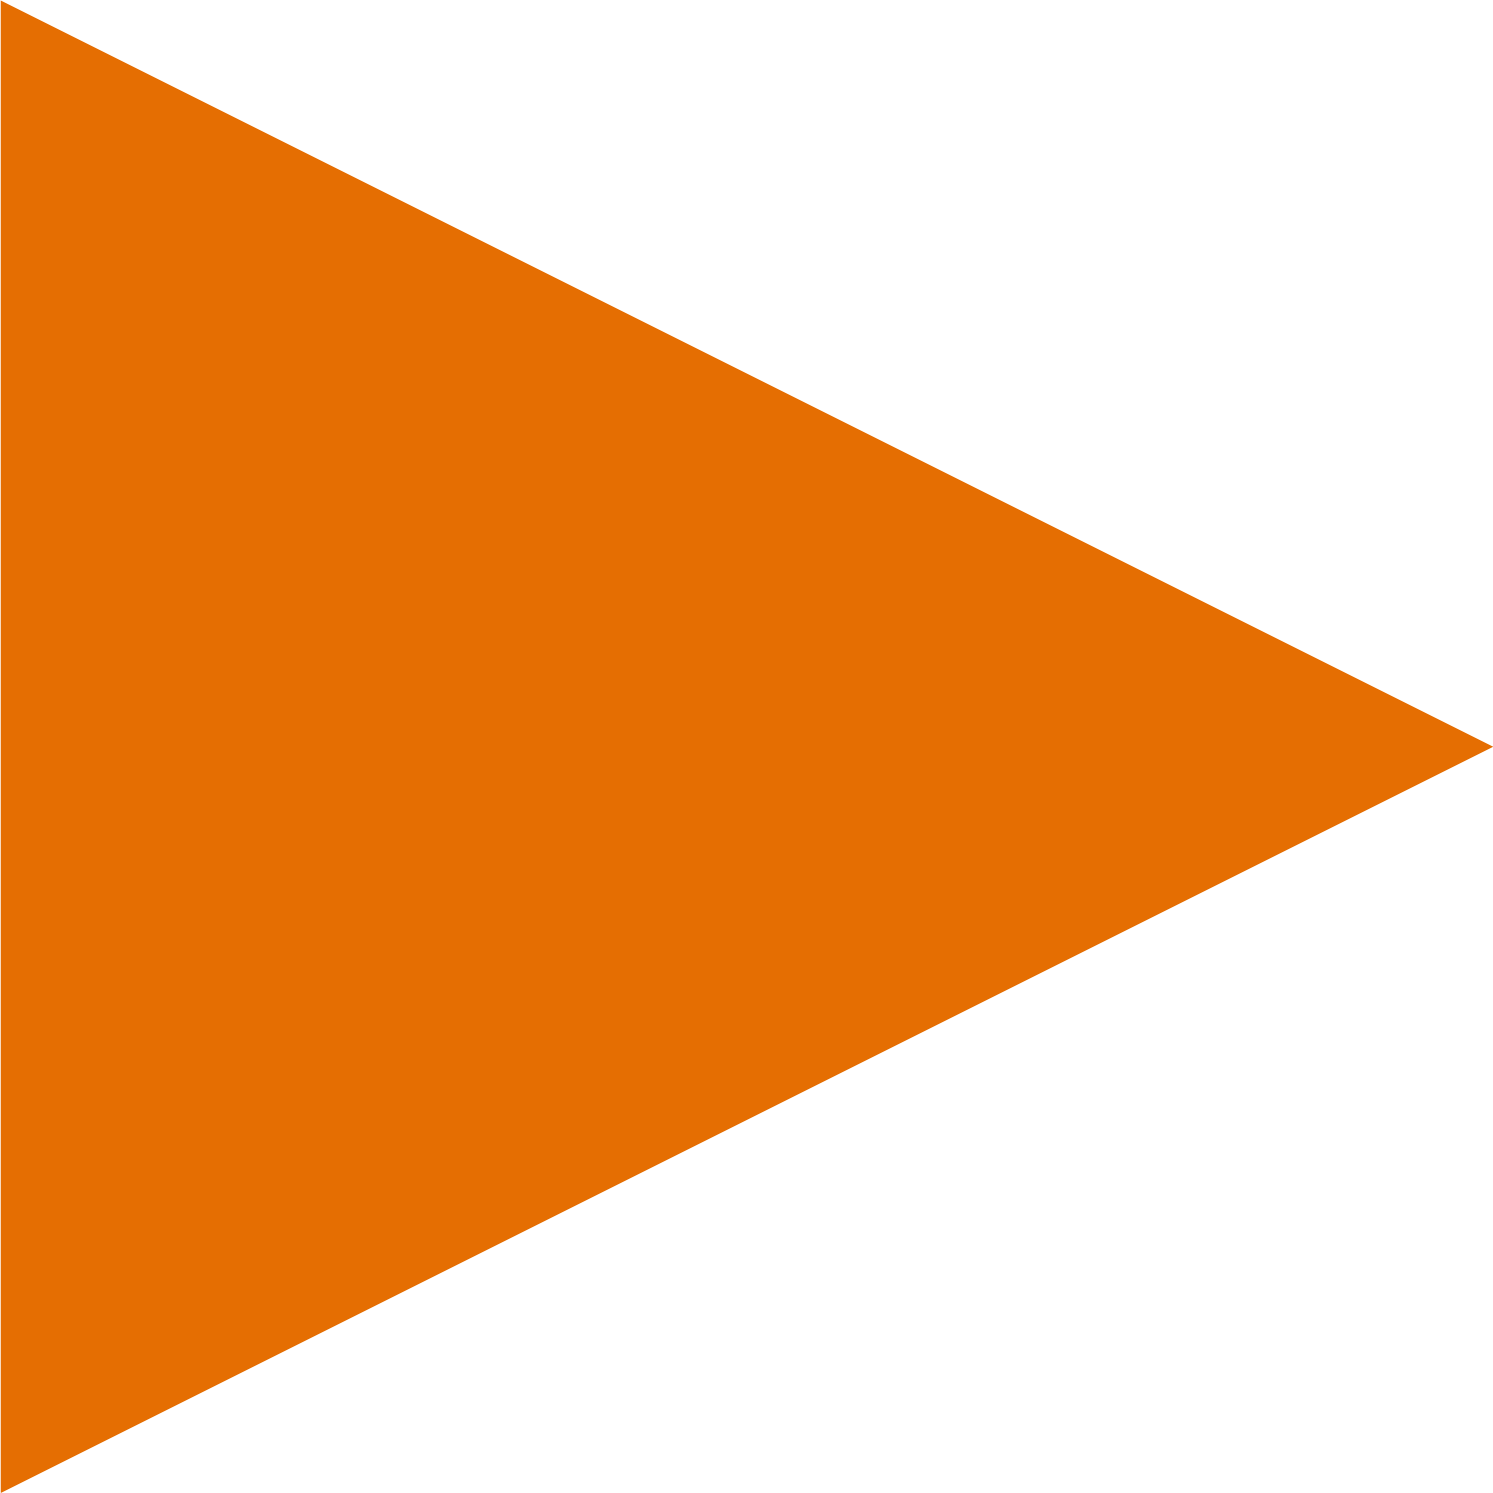 Orange arrow to right